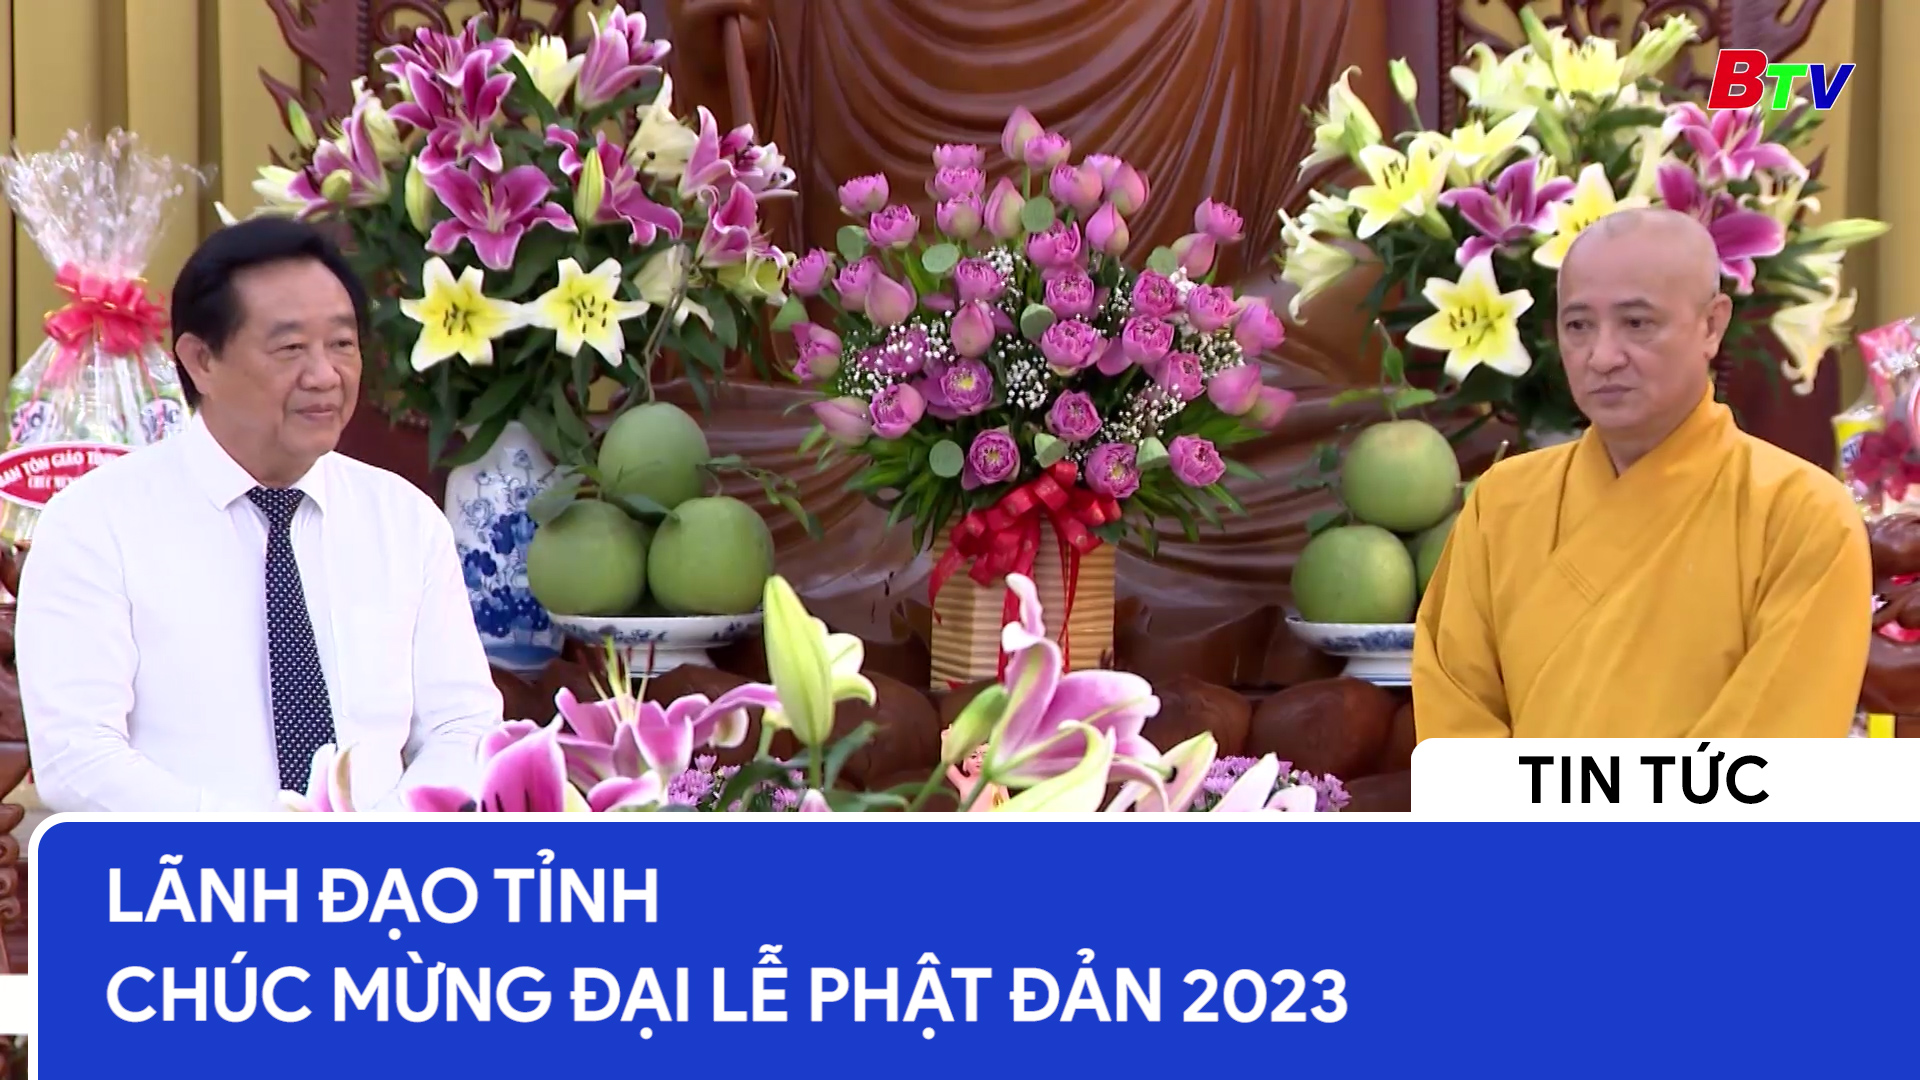 Lãnh đạo tỉnh chúc mừng Đại lễ Phật đản 2023